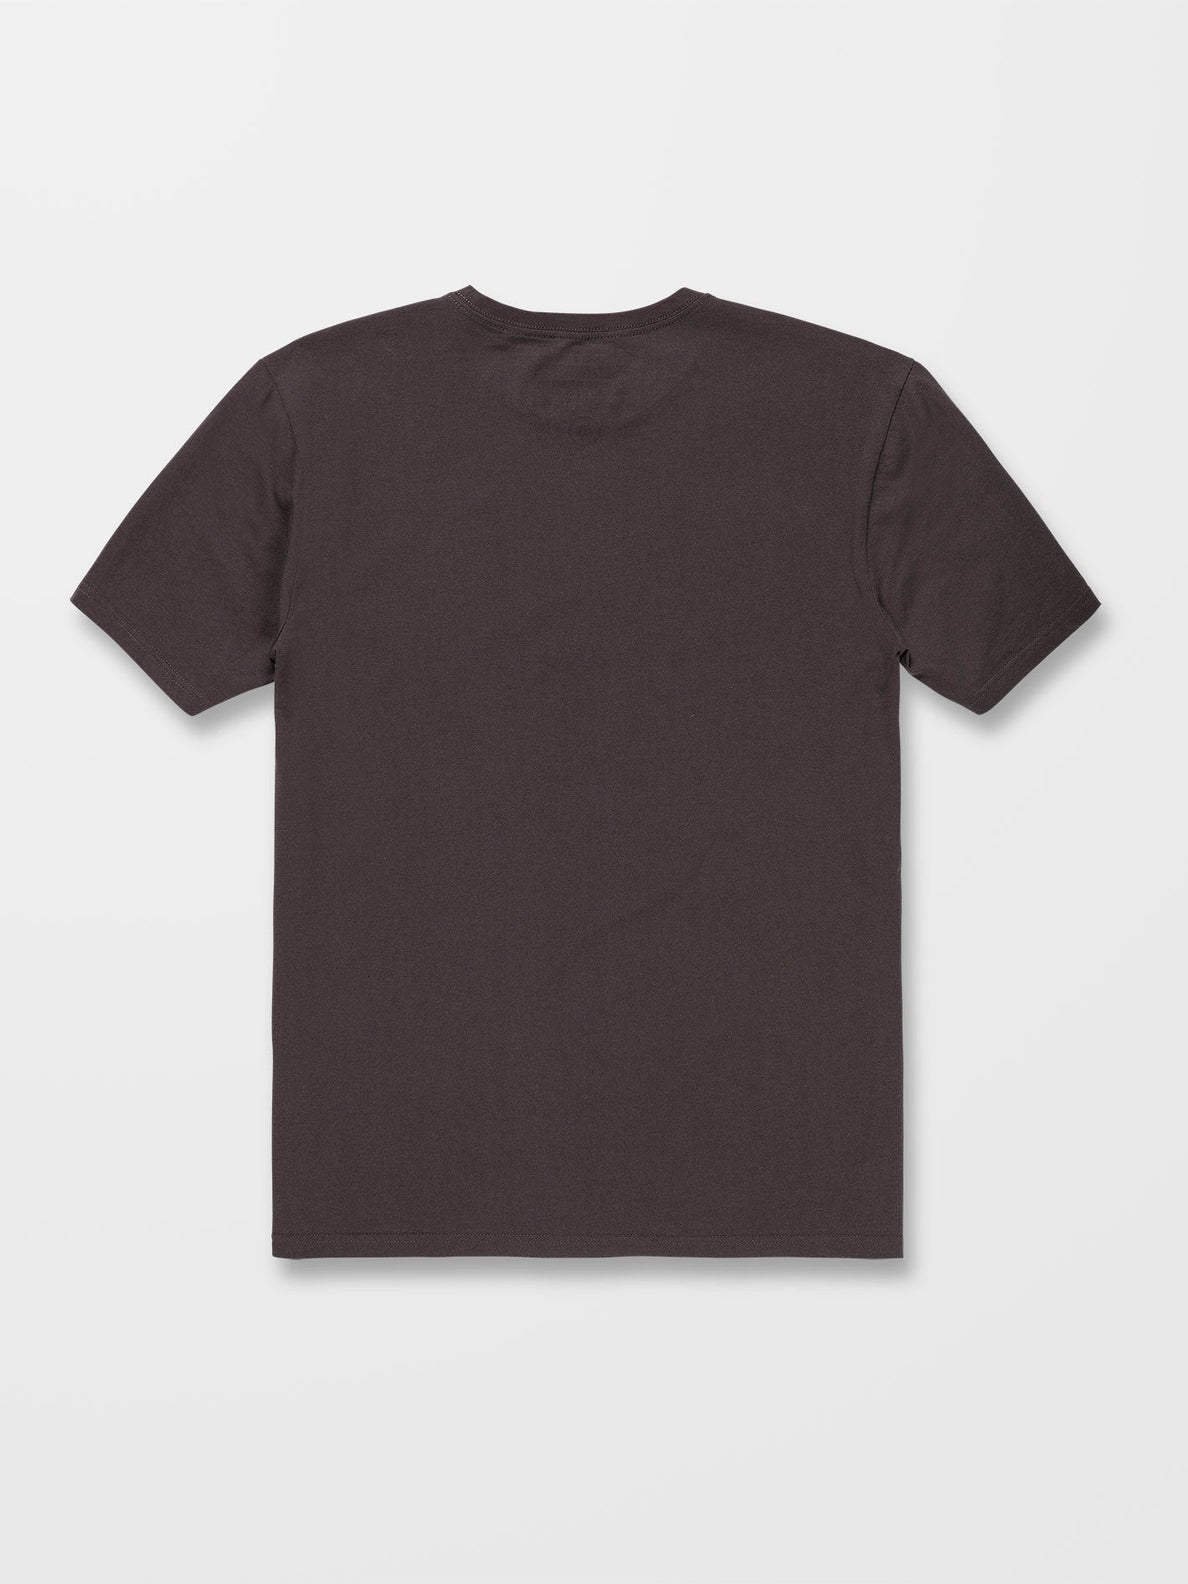 Caged Stone T-shirt - RINSED BLACK (A5012300_RIB) [2]